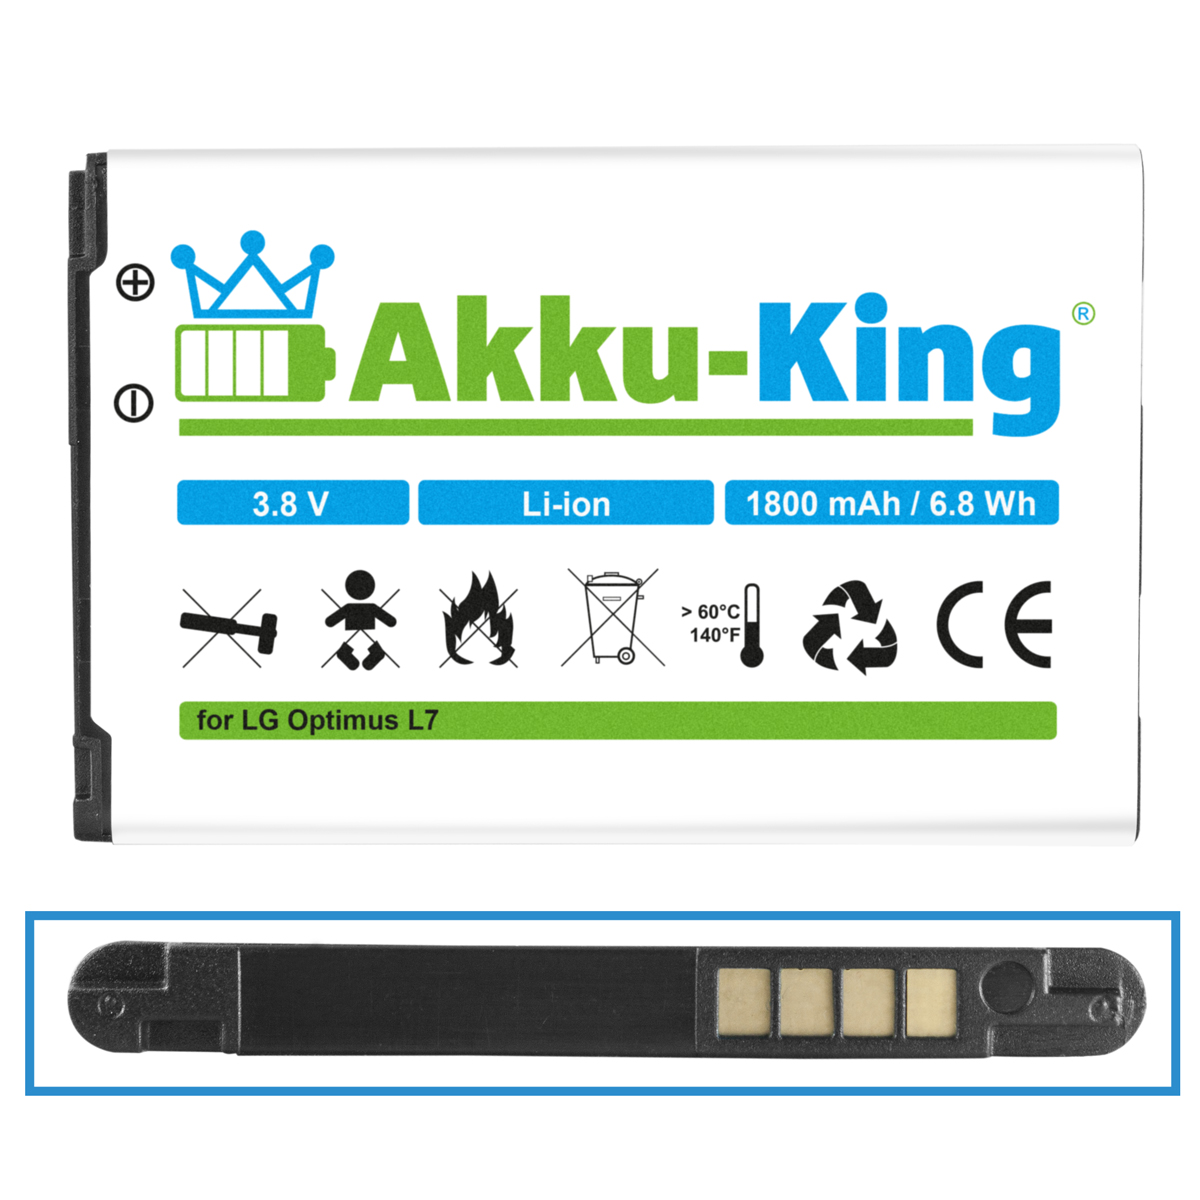 AKKU-KING Li-Ion 1800mAh Handy-Akku, 3.8 Volt, mit BL-44JH kompatibel LG Akku